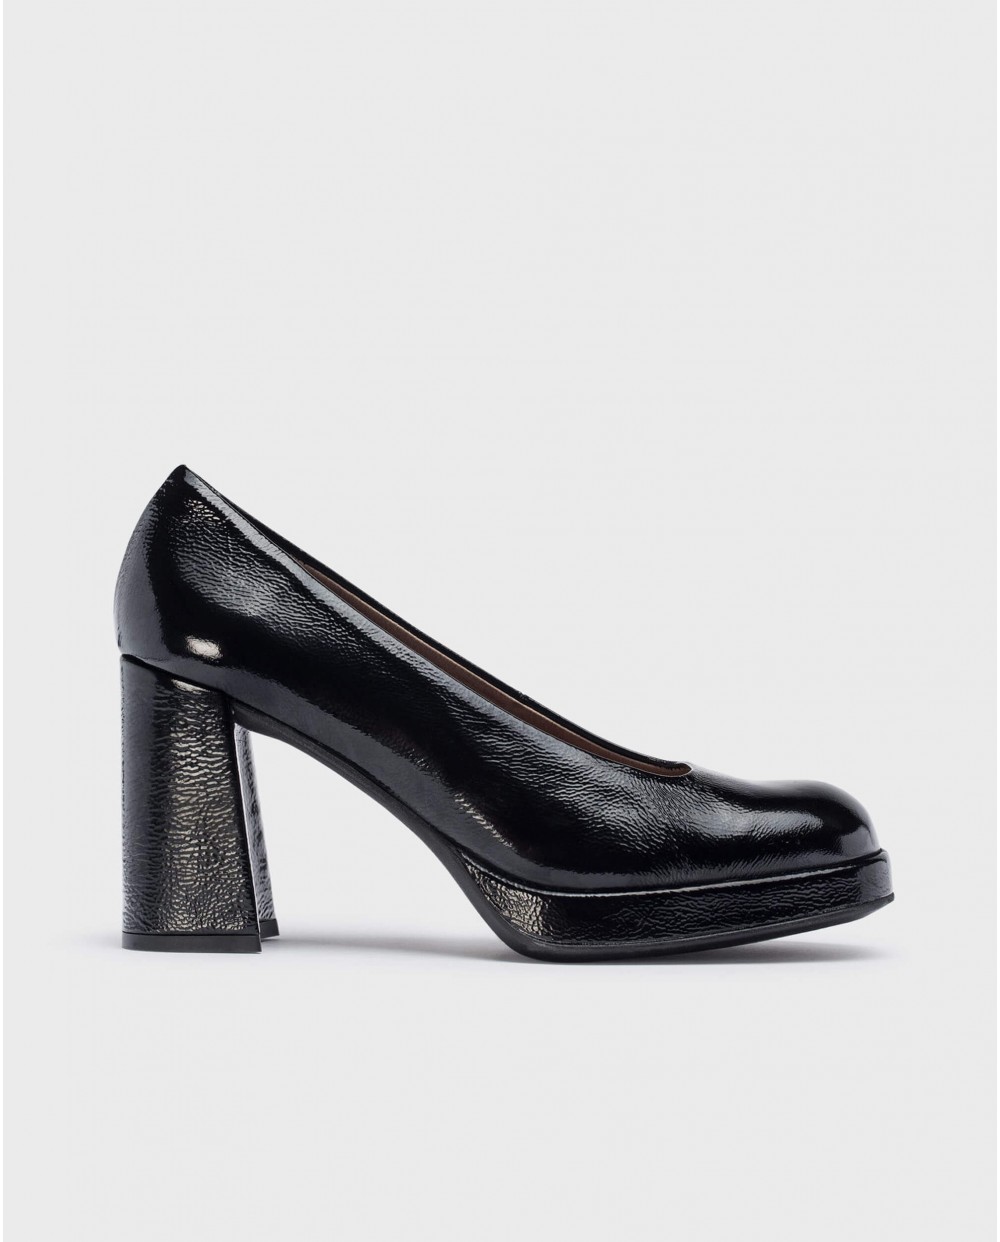 Wonders-Heels-Black CAPTAIN high-heeled shoe